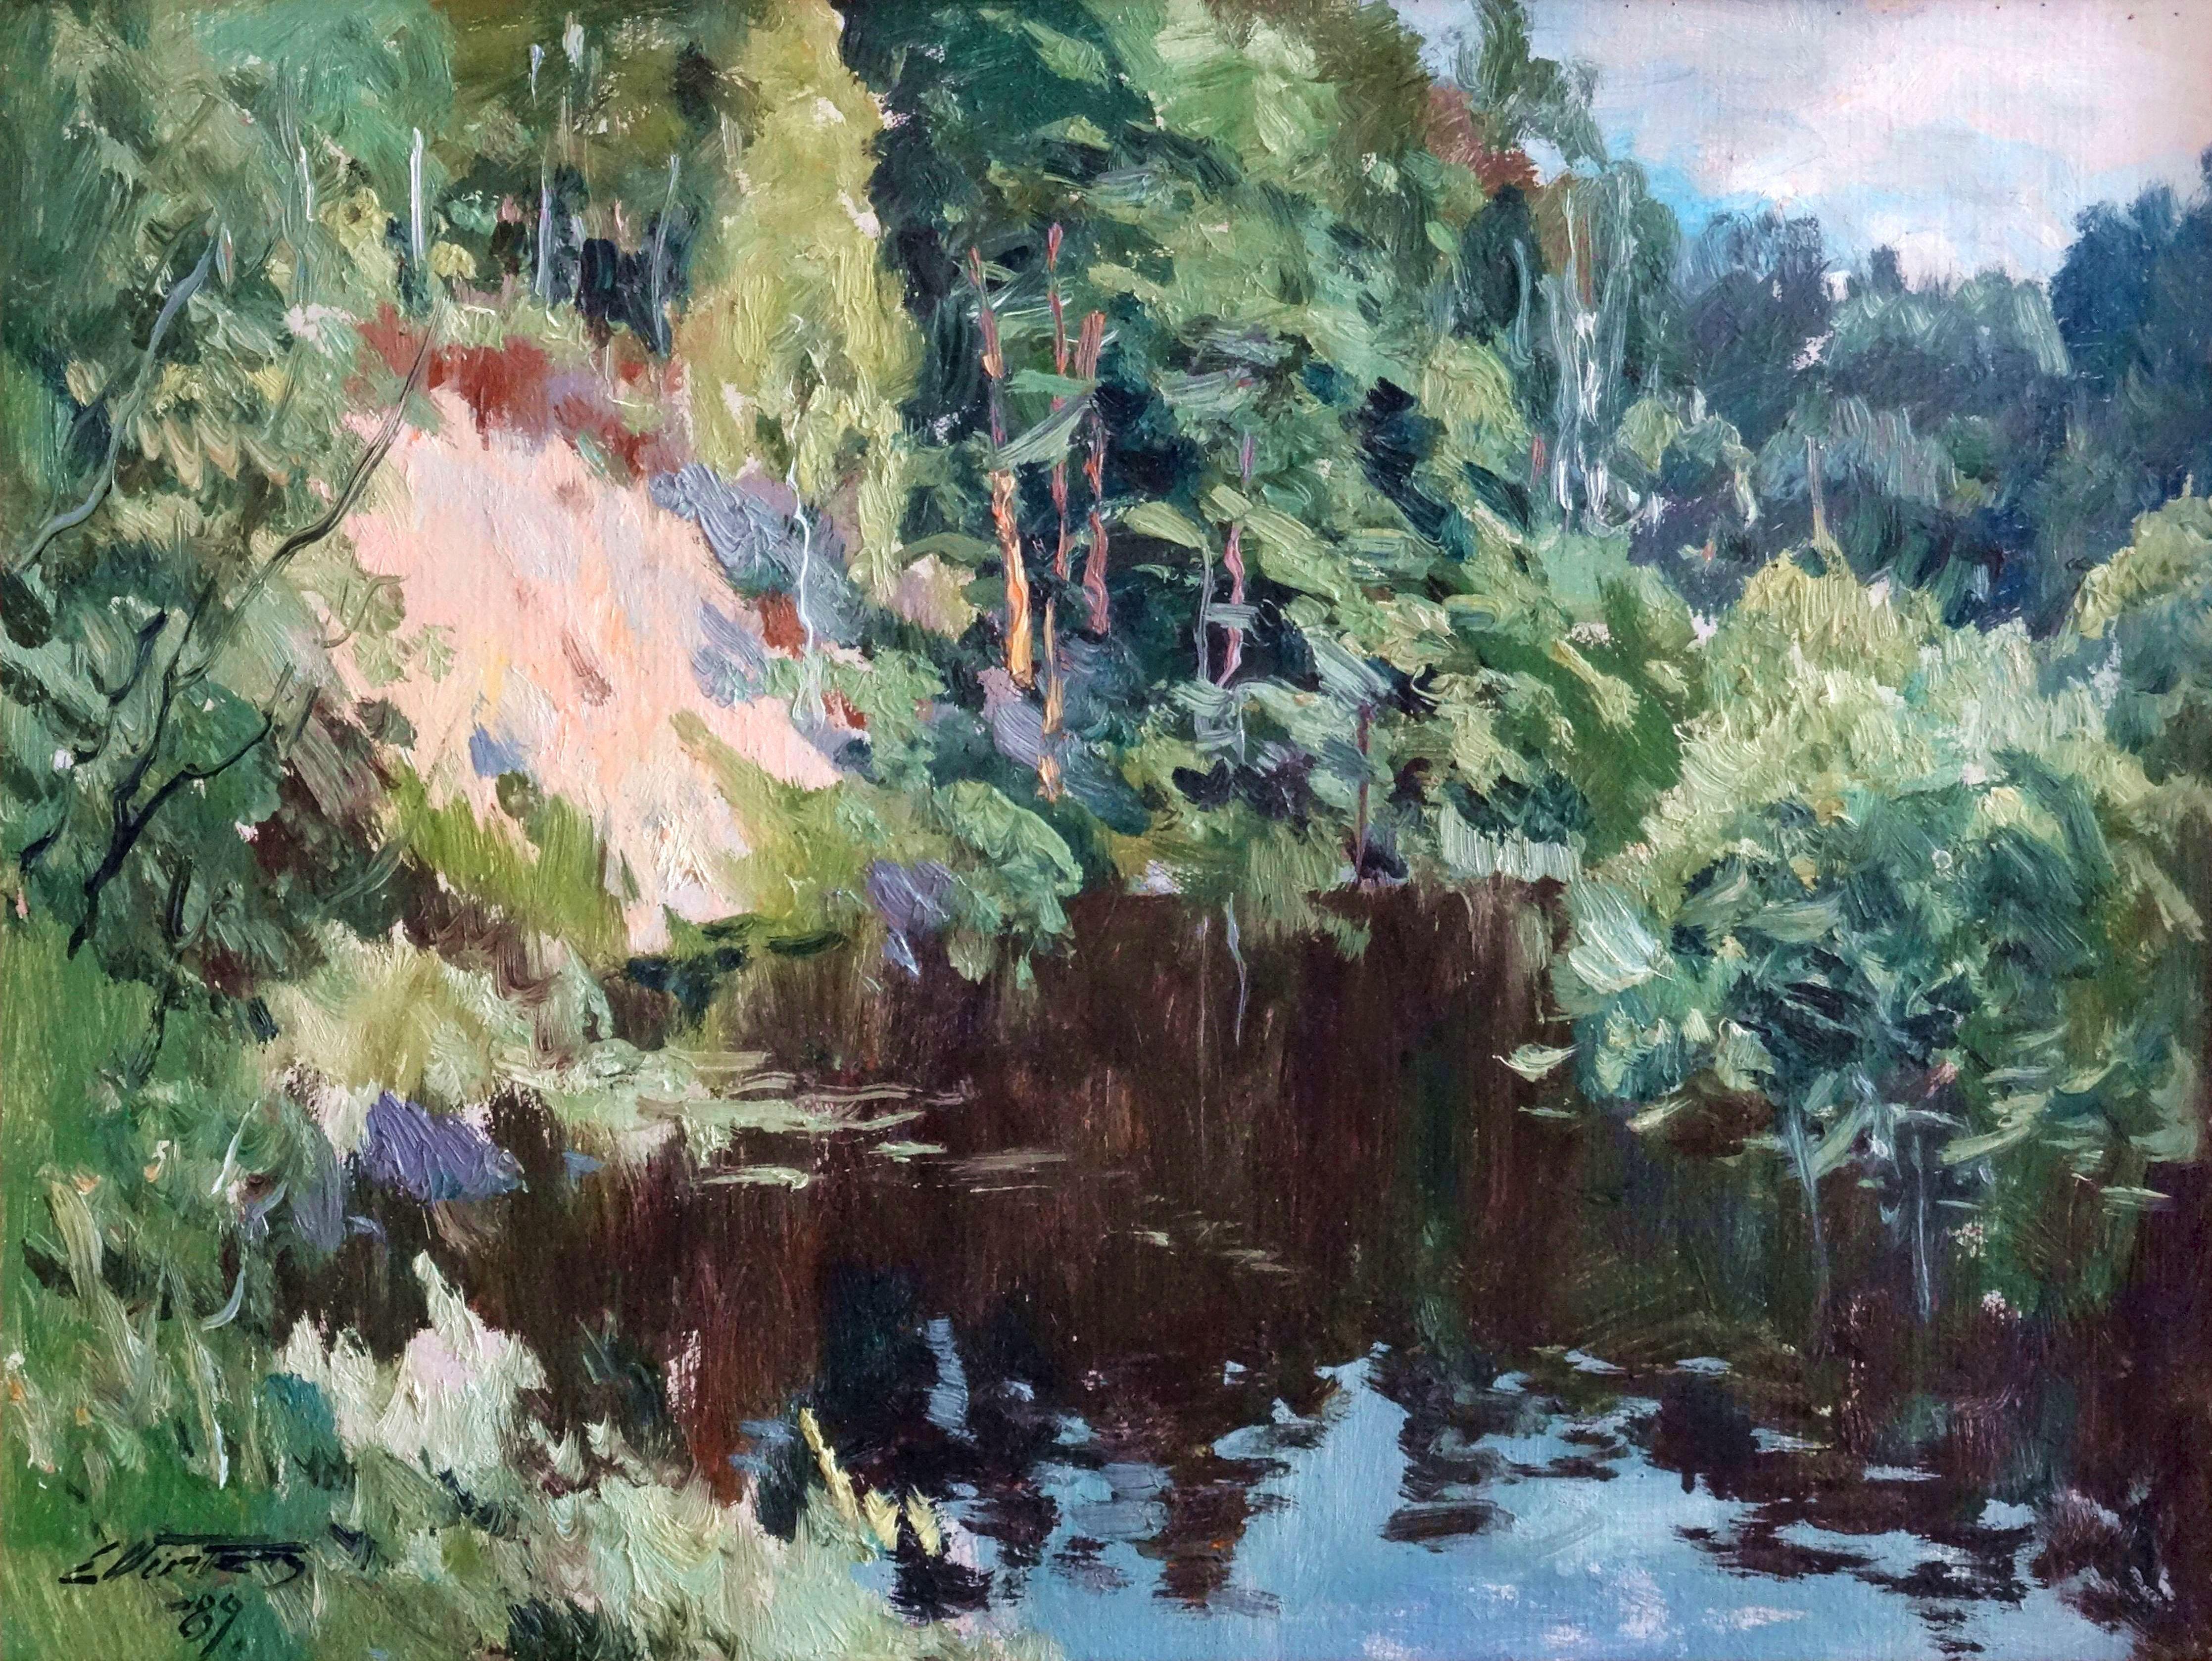 La rivière. 1989, huile sur carton, 46 x 60,5 cm